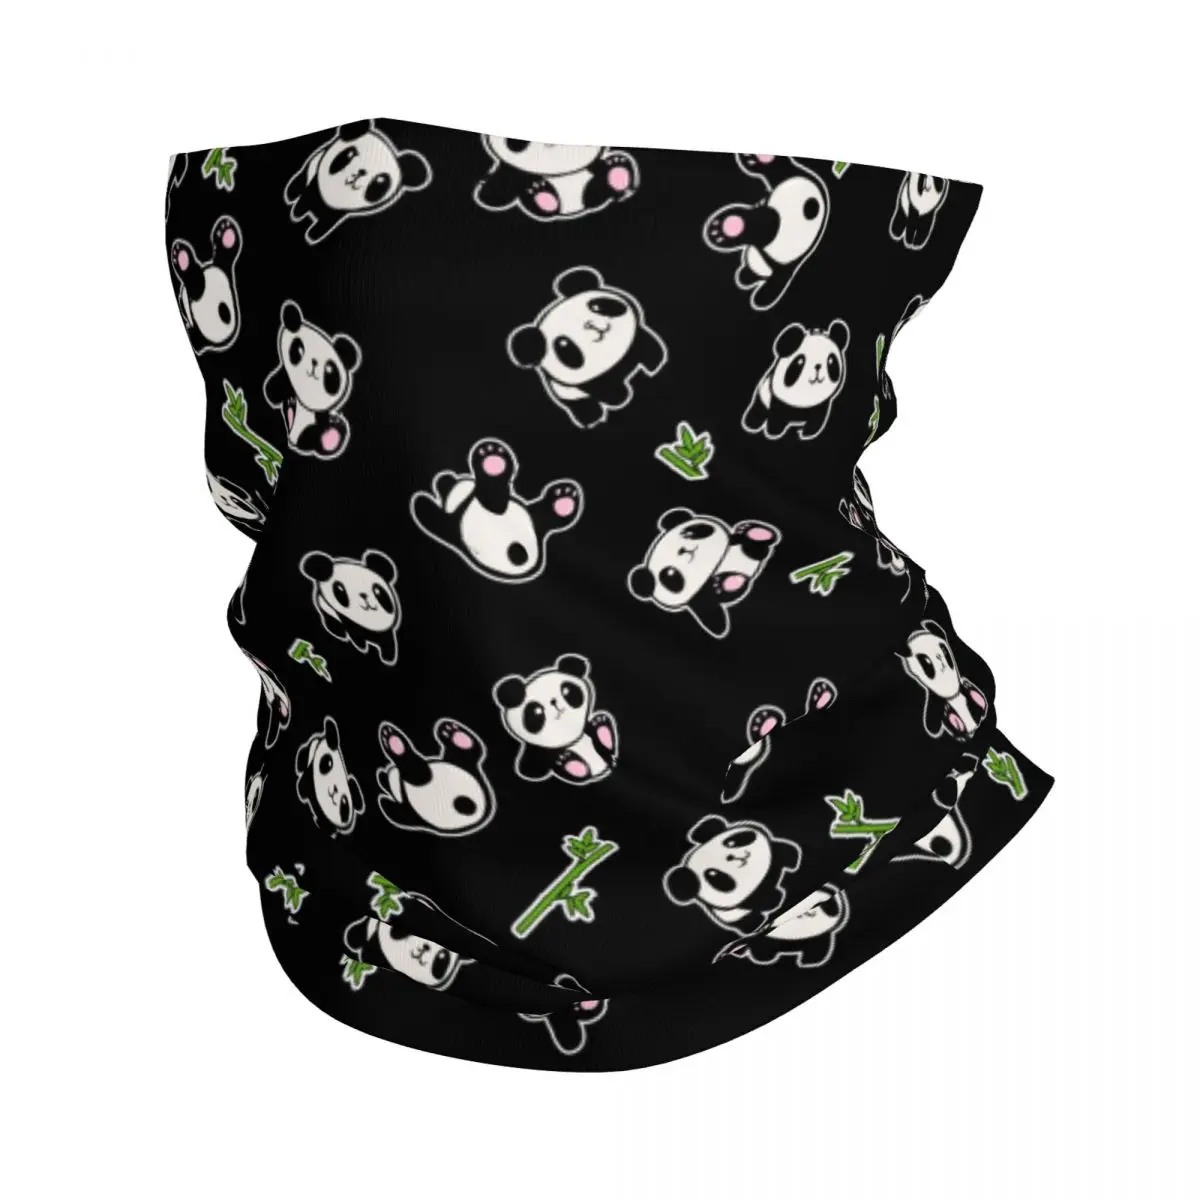 

Бандана-шарф с принтом панды, Балаклава с мультяшными животными, теплый дышащий головной убор для уличного спорта, унисекс, для взрослых